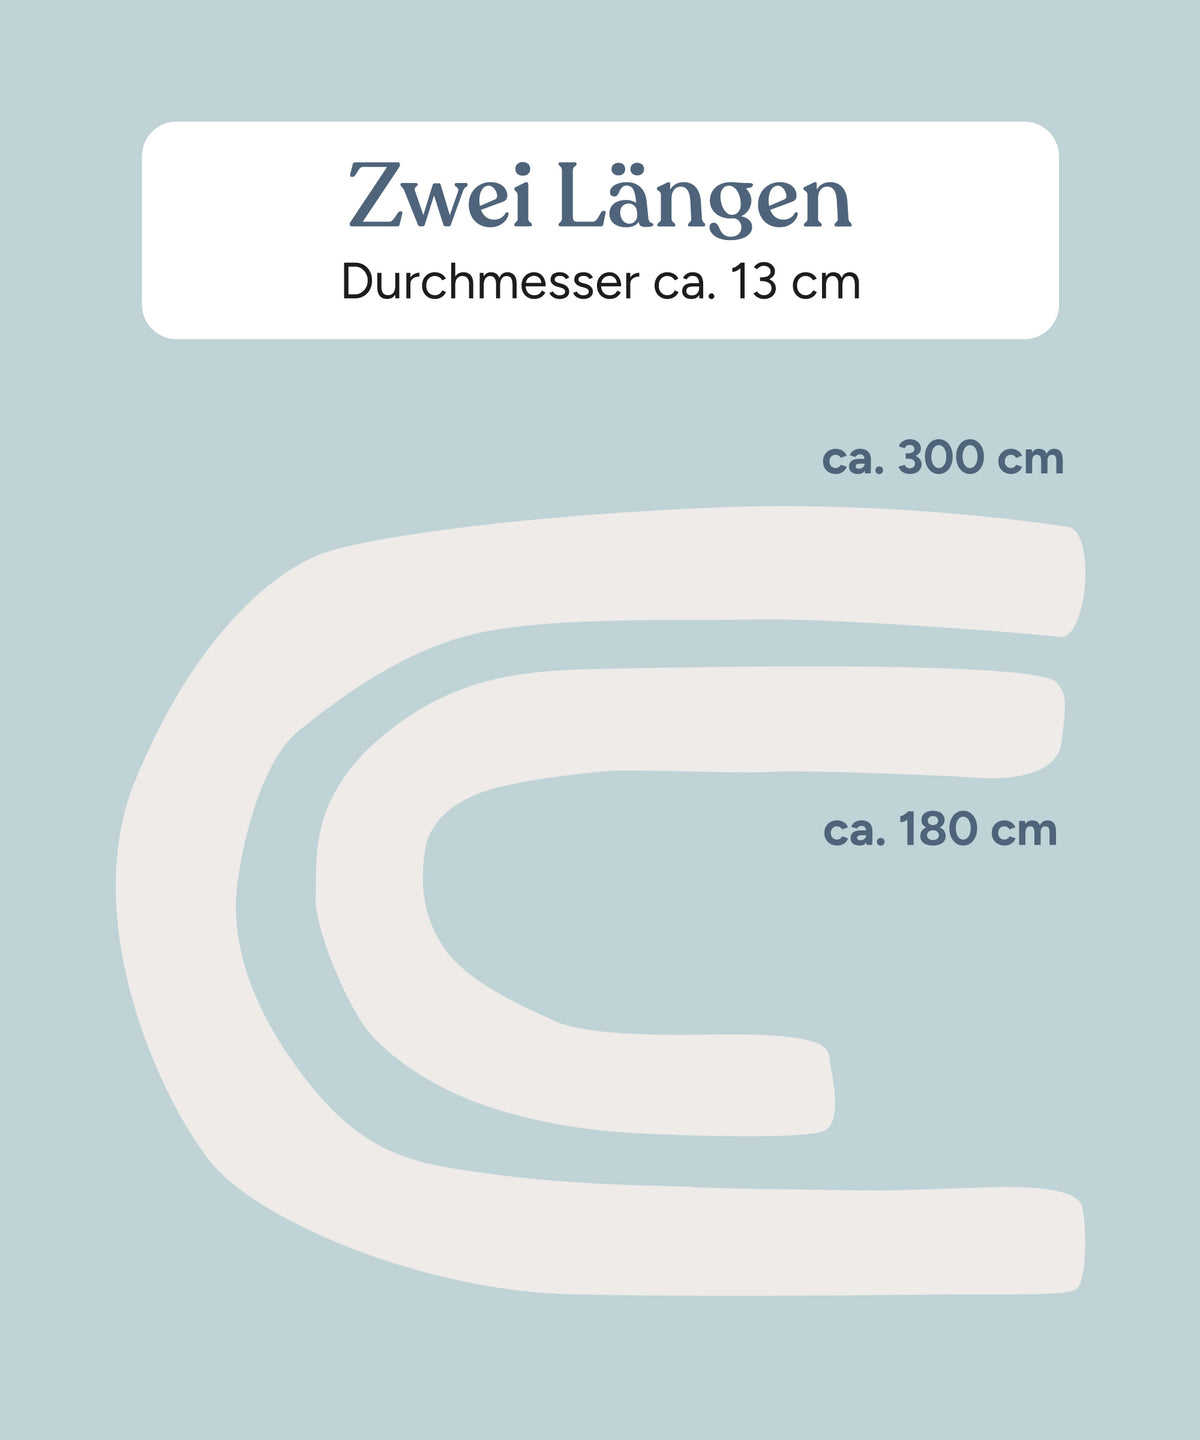 Grafik mit Übersicht über die zwei erhältlichen Längen ca. 180 cm und ca. 300 cm.